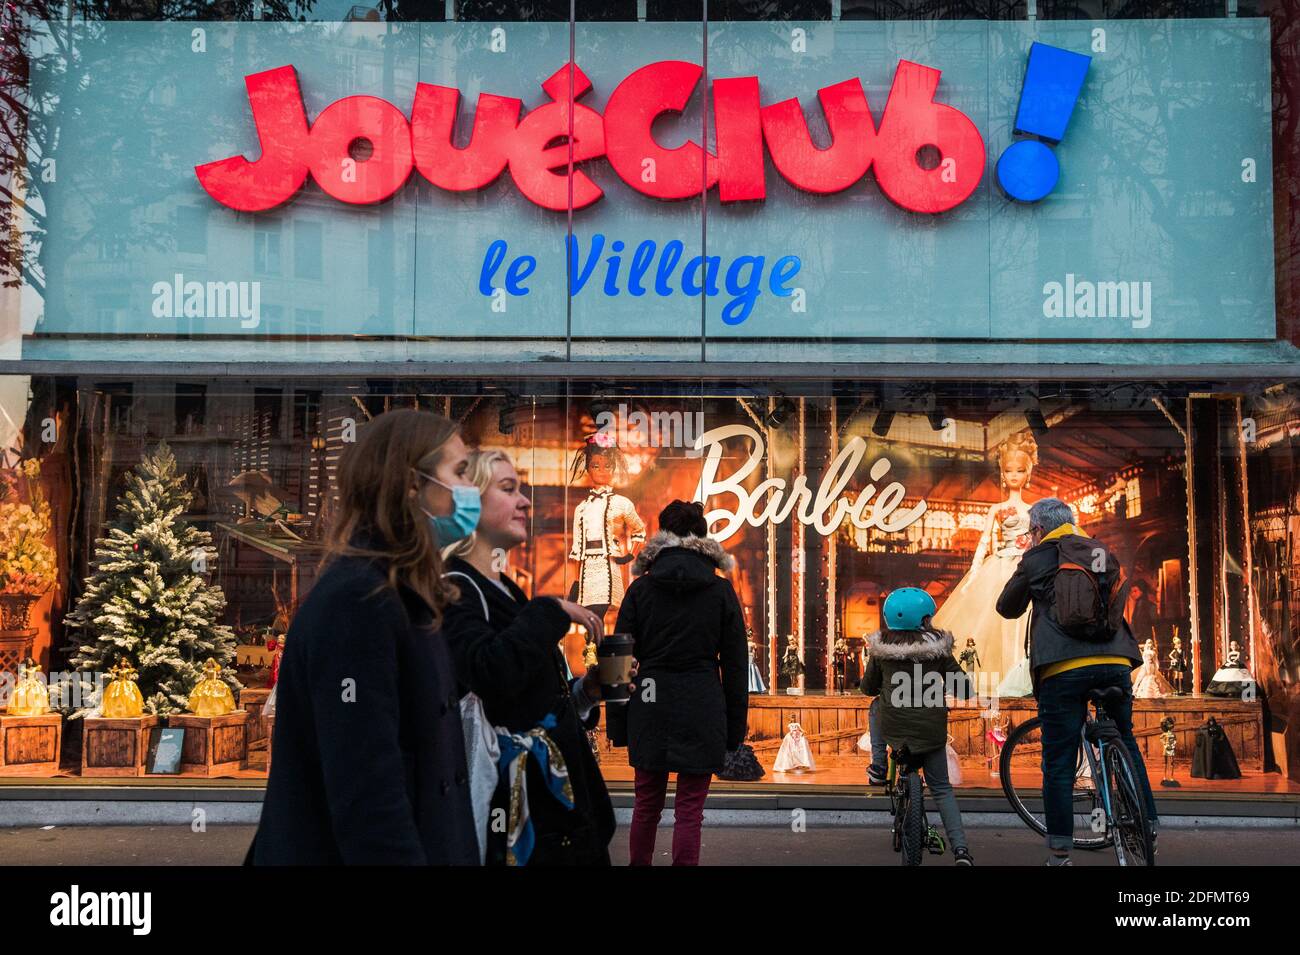 Les enfants et leurs familles regardent les vitrines d'un magasin de jouet,  le Joue Club, après que le gouvernement français ait assoupli les mesures  de confinement de Covid-19 et permis à toutes